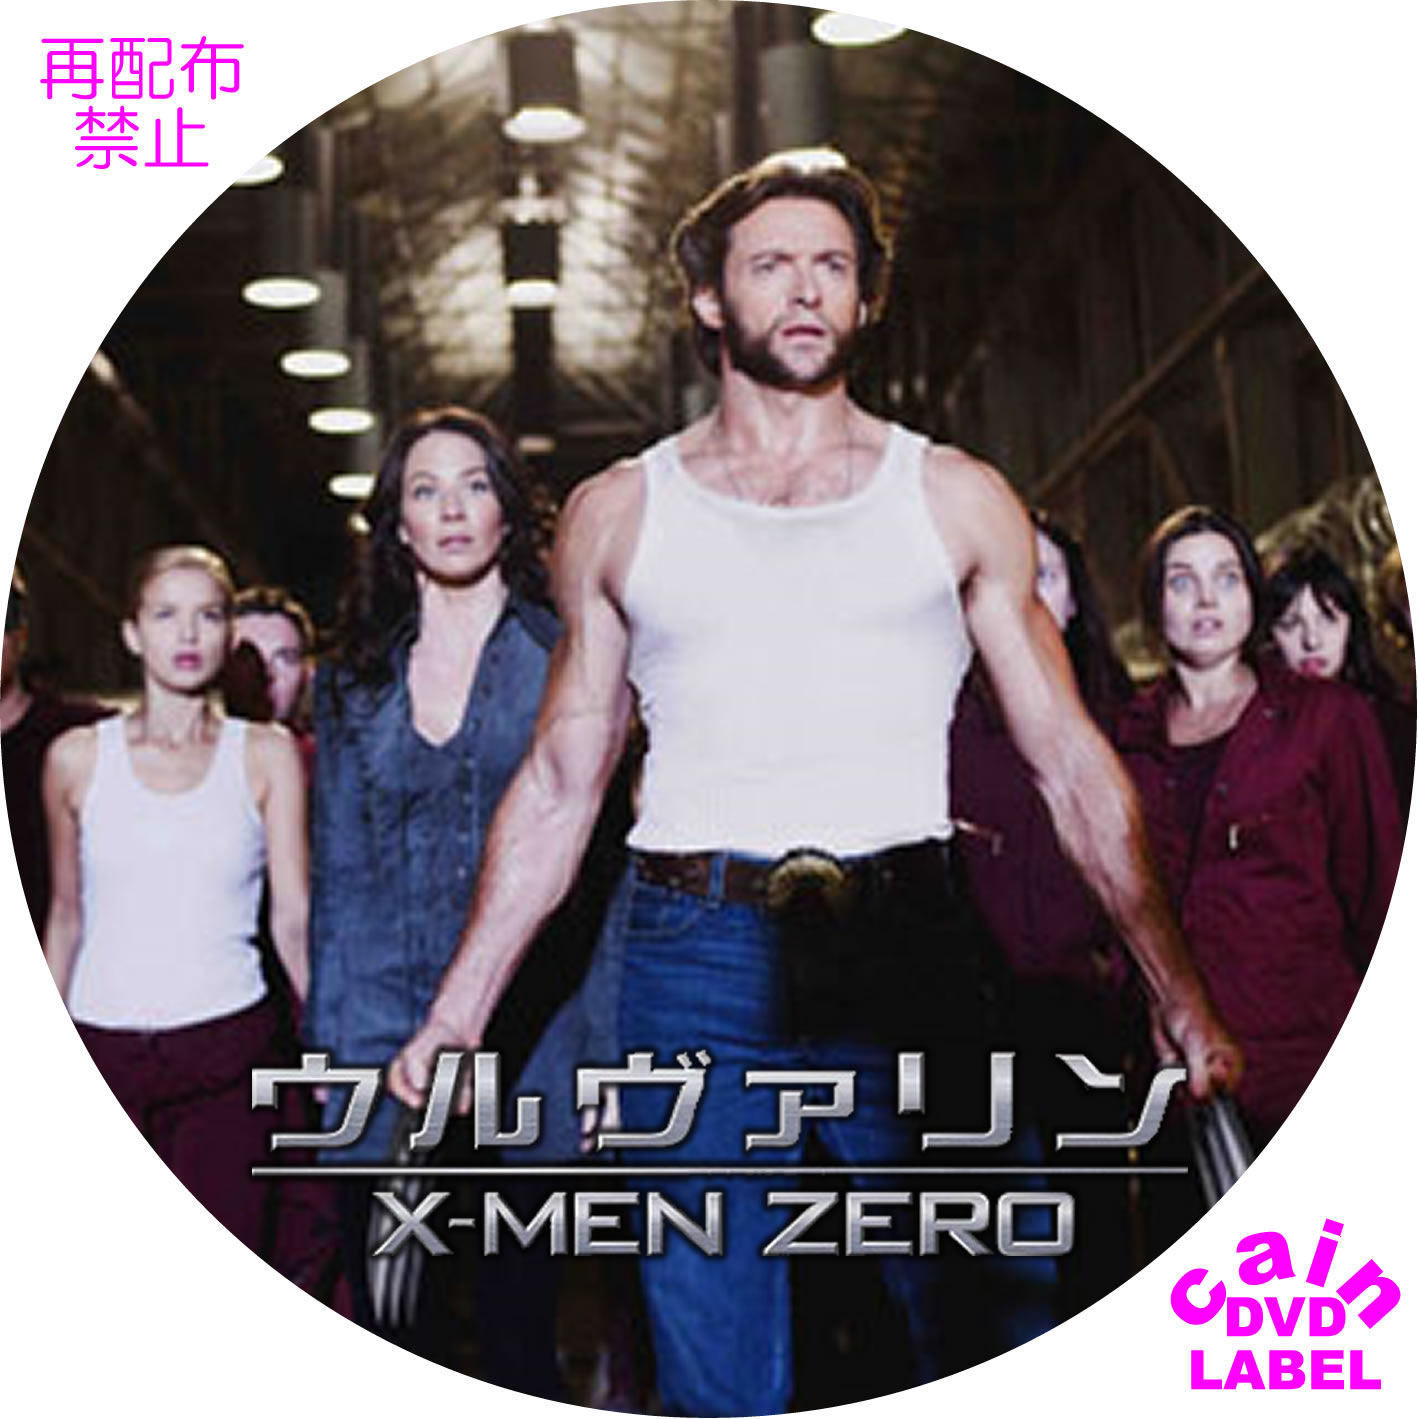 ウルヴァリン X Men Zero Cain S Dvd ラベル保管庫